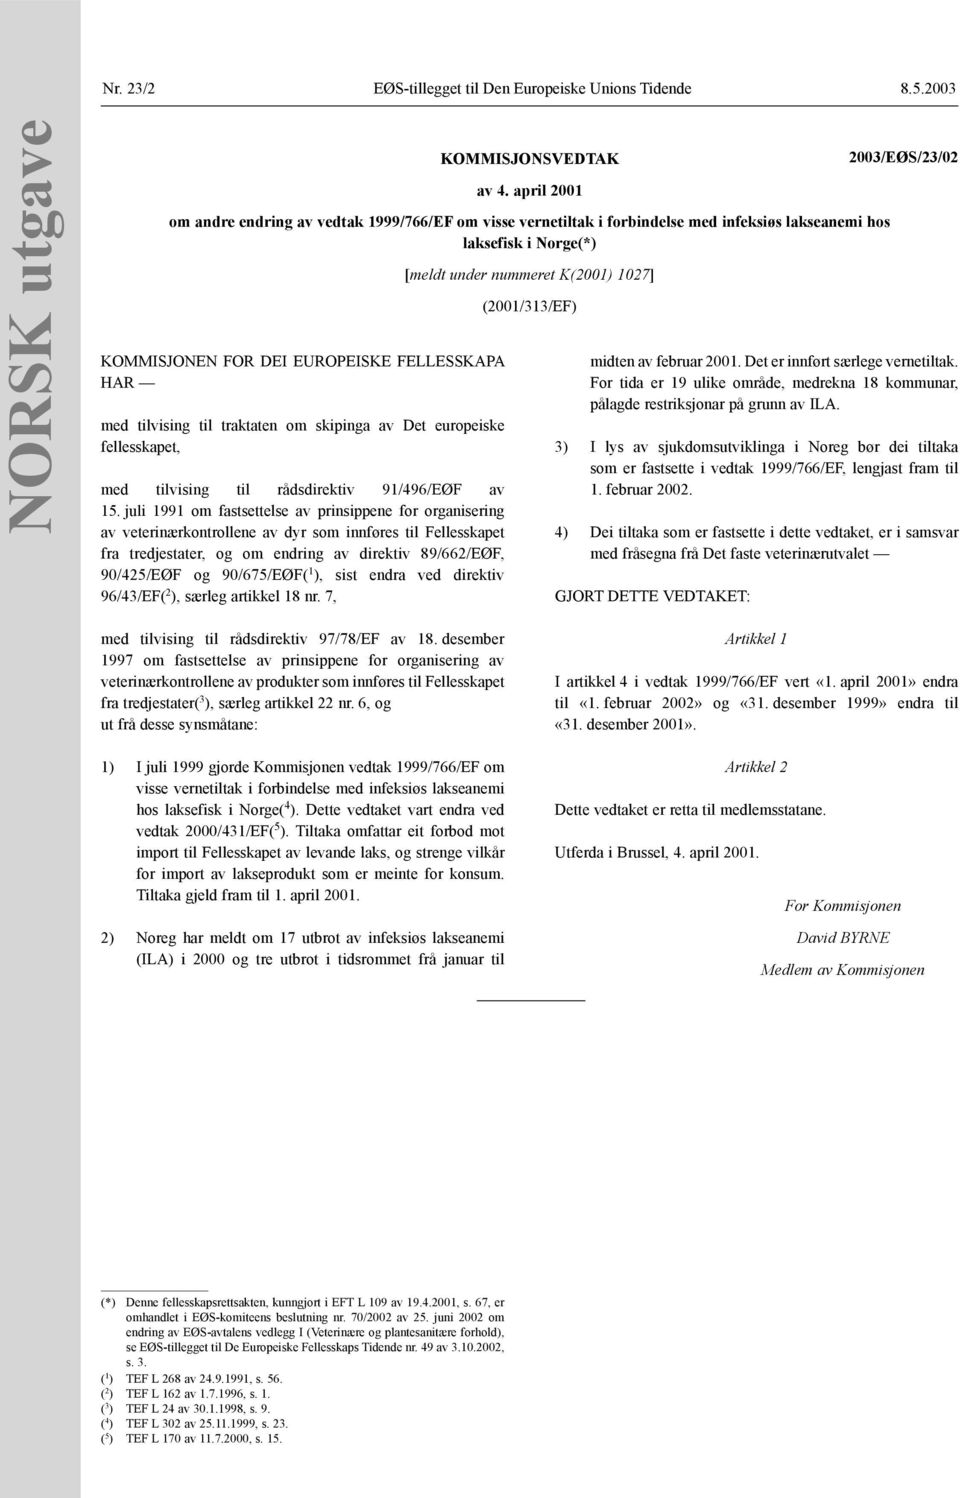 traktaten om skipinga av Det europeiske fellesskapet, med tilvising til rådsdirektiv 91/496/EØF av 15.